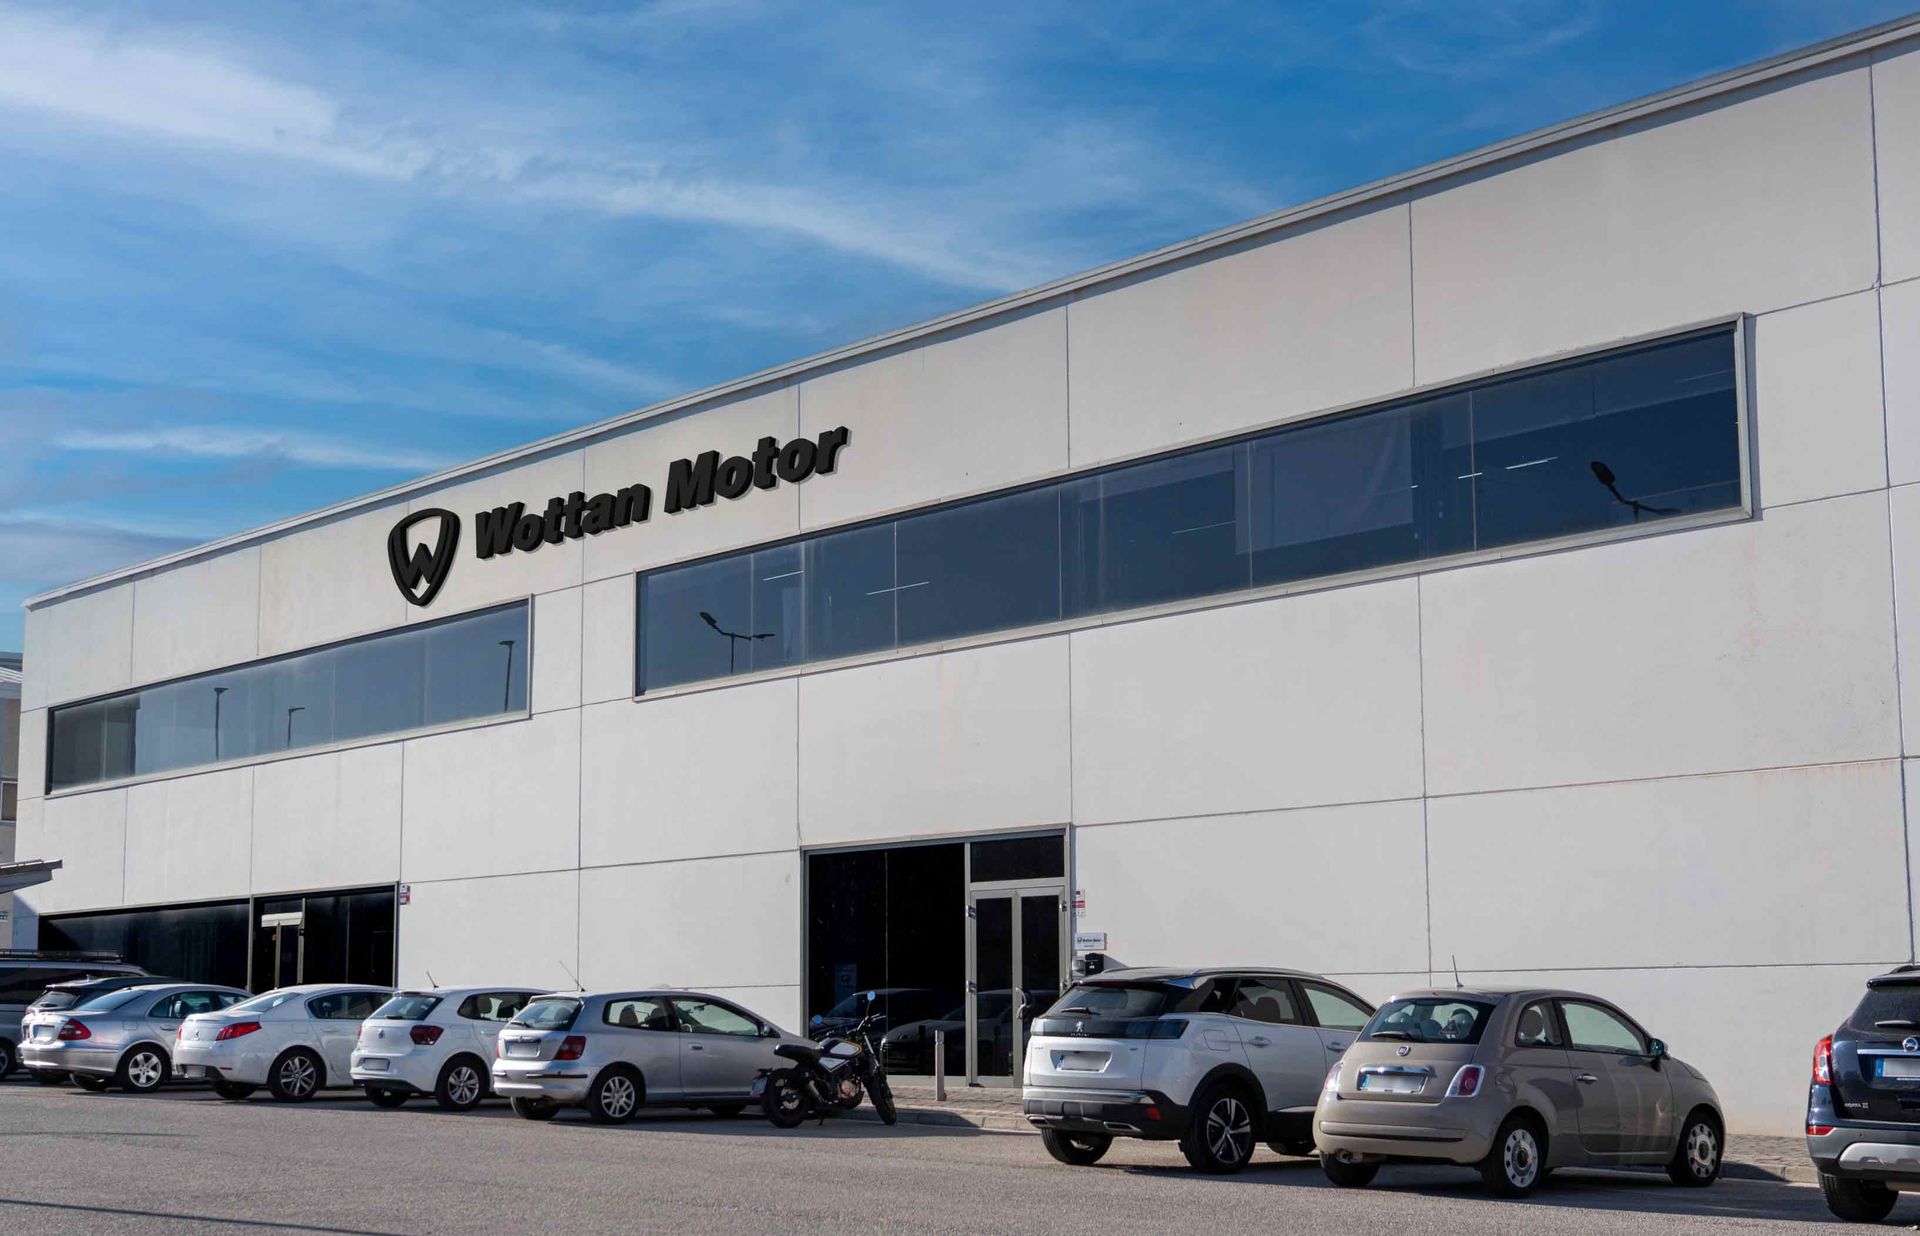 [La sede di Wottan Motor a Rotova] La sede di Wottan Motor a Rotova si distingue per il suo design moderno e professionale, che riflette l'immagine di un'azienda innovativa e all'avanguardia nel settore.